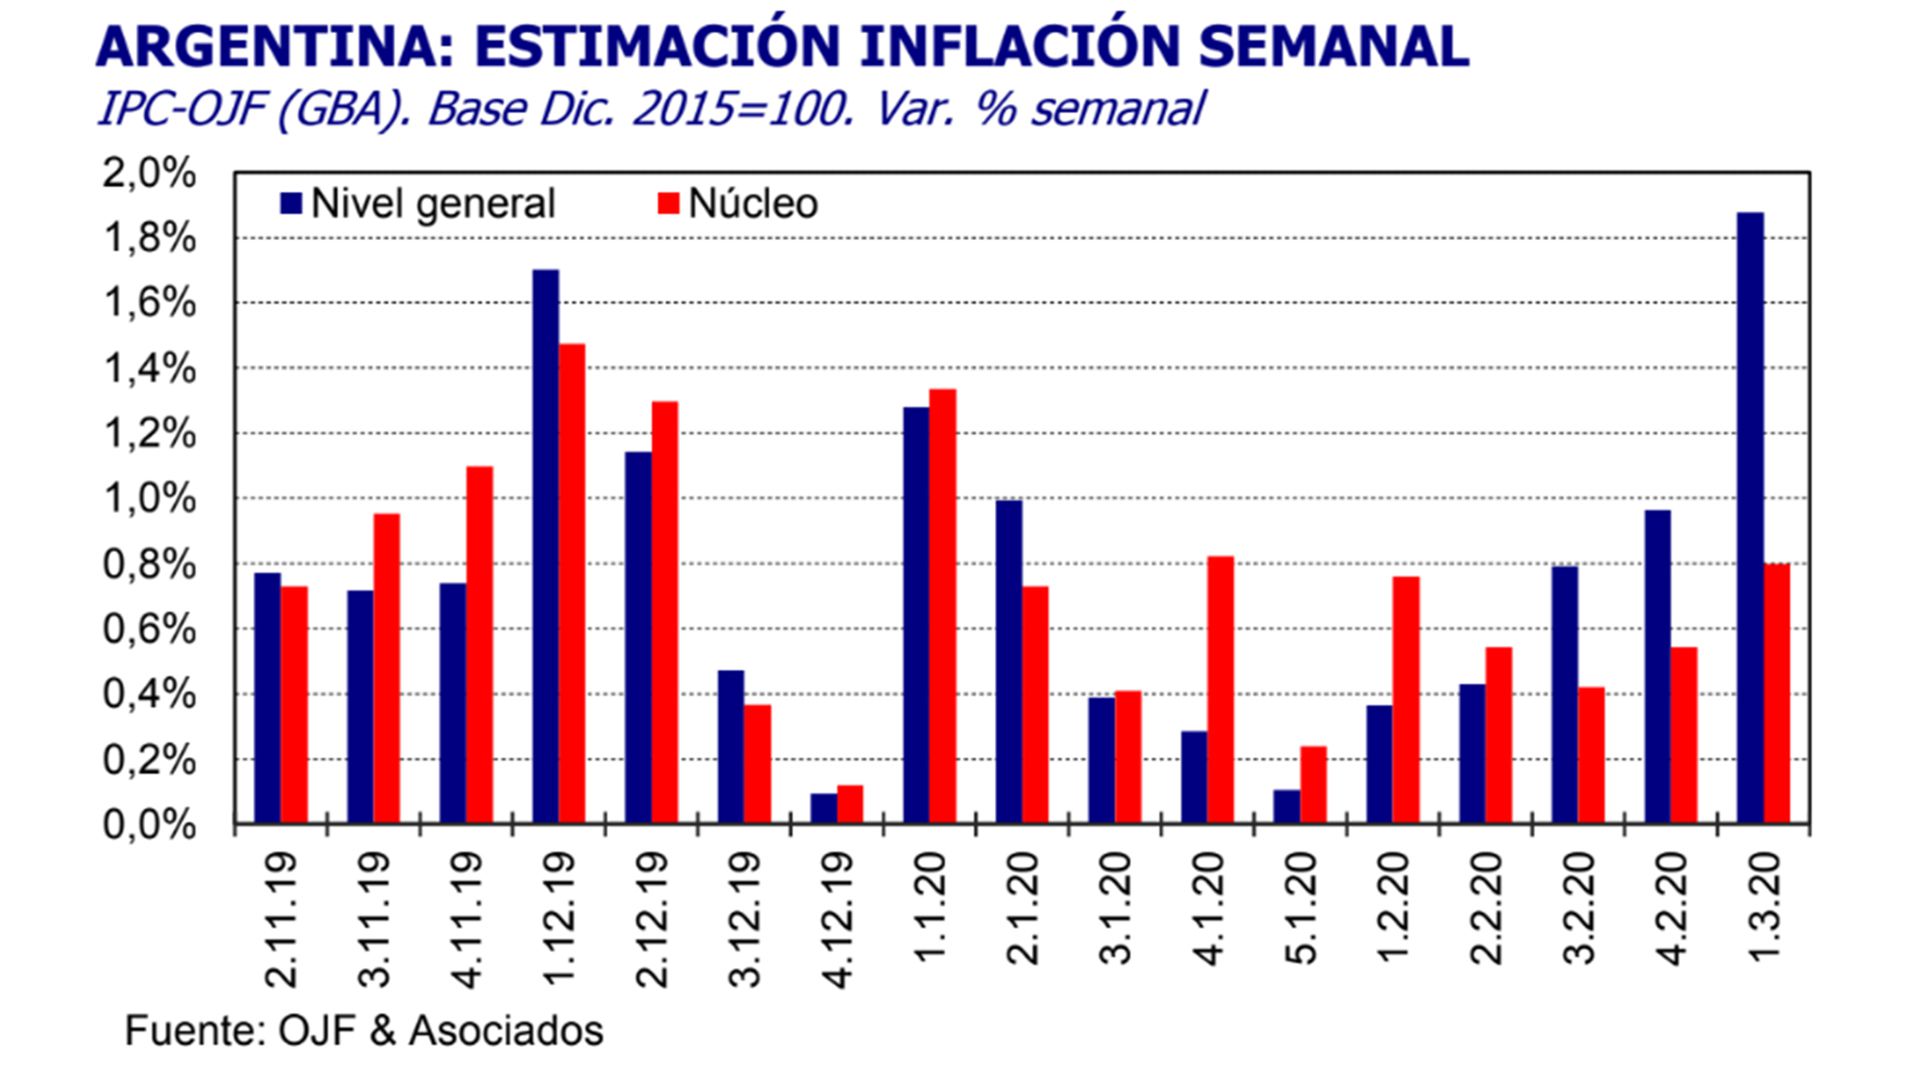 El relevamiento de la inflación semanal del estudio Ferreres